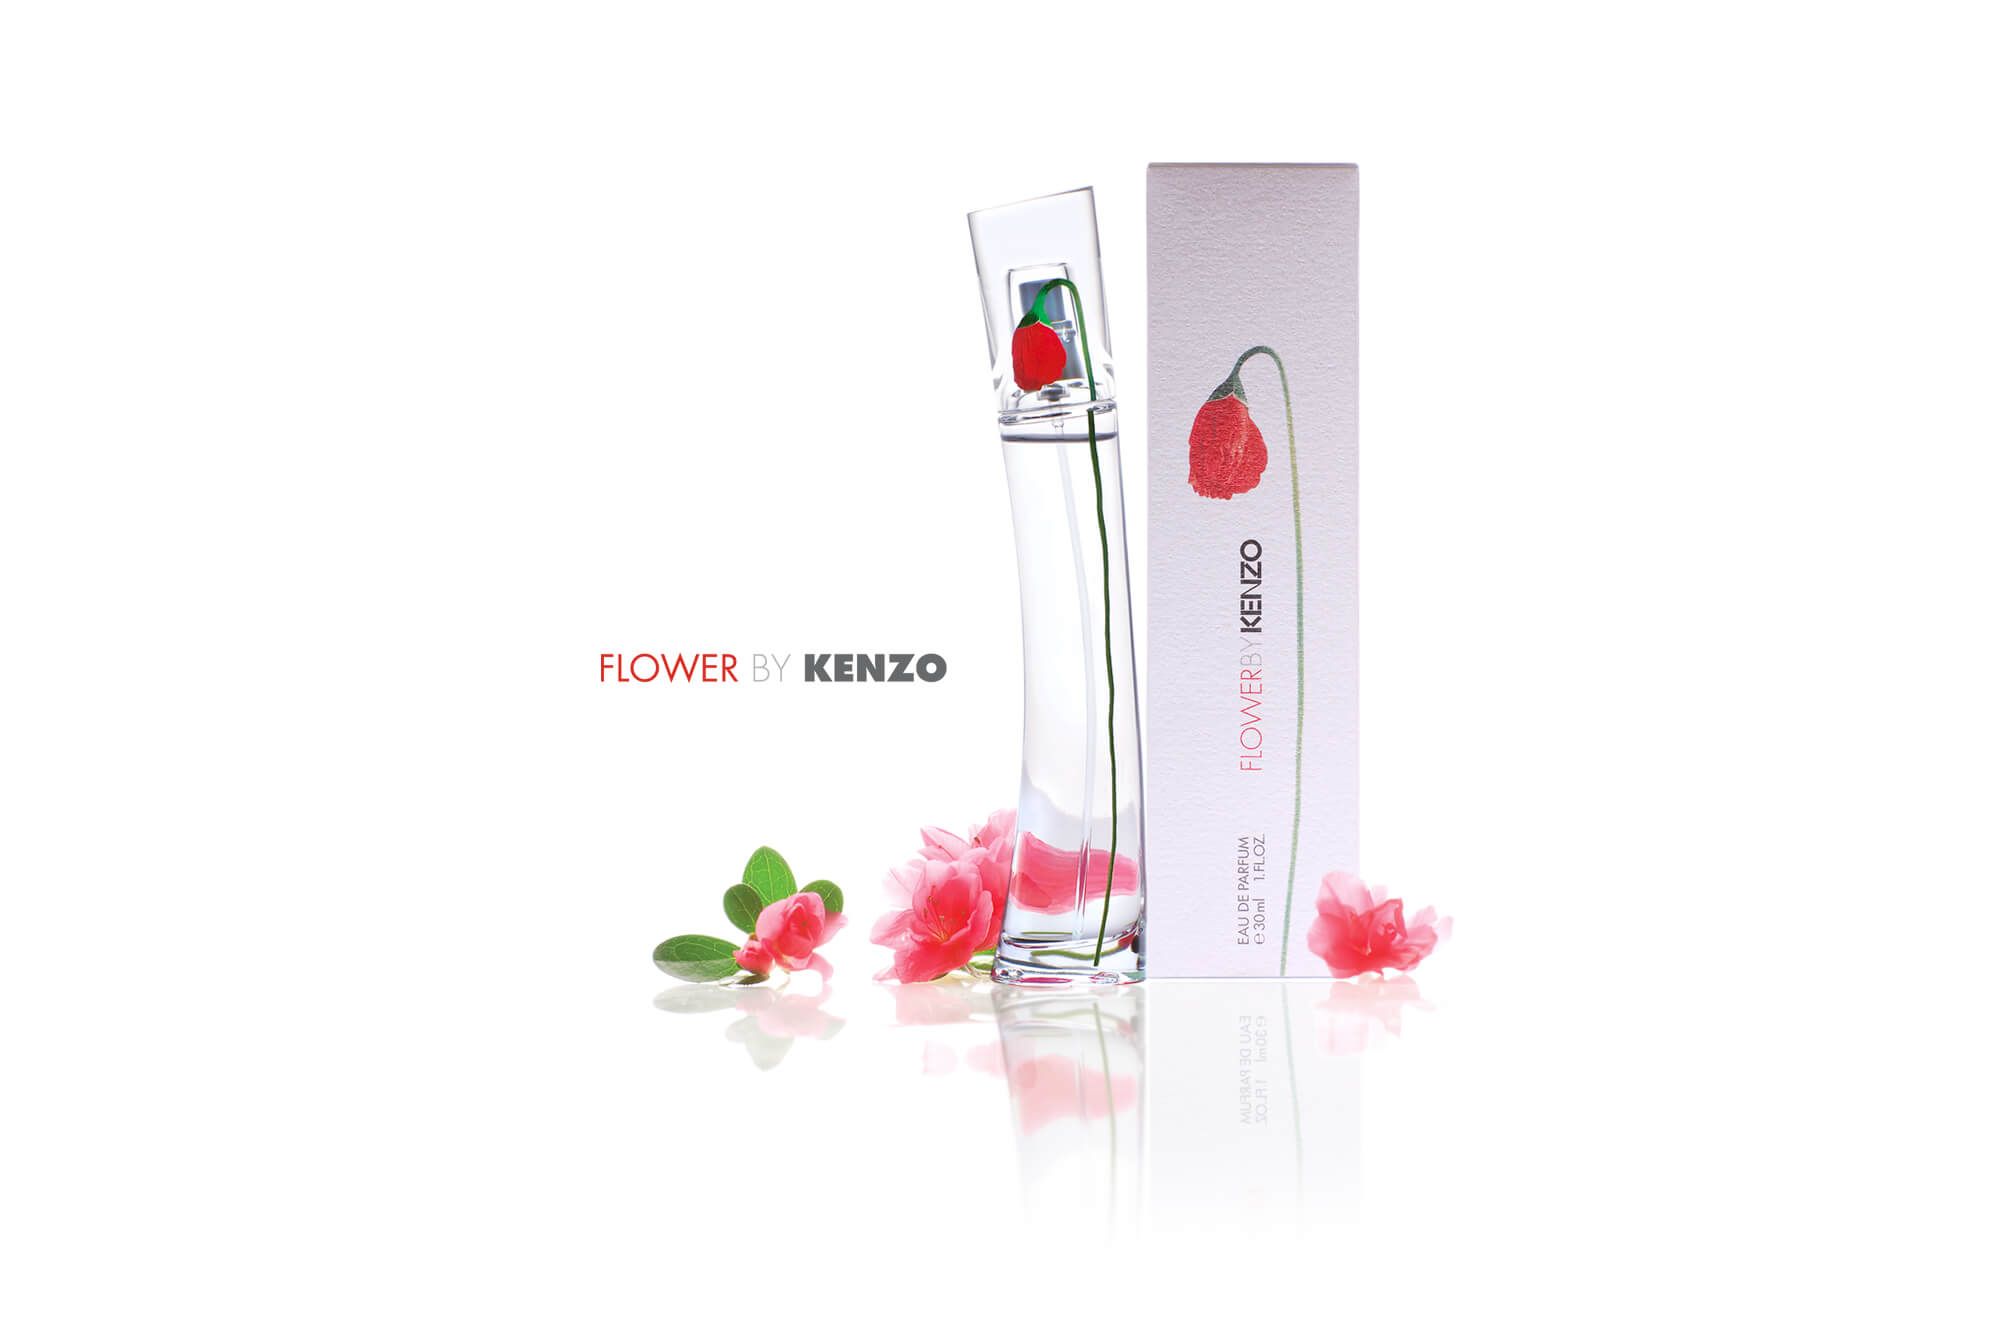 Mise en valeur du parfum Flower de la maison Kenzo, Antoine Duchene photographe publicitaire